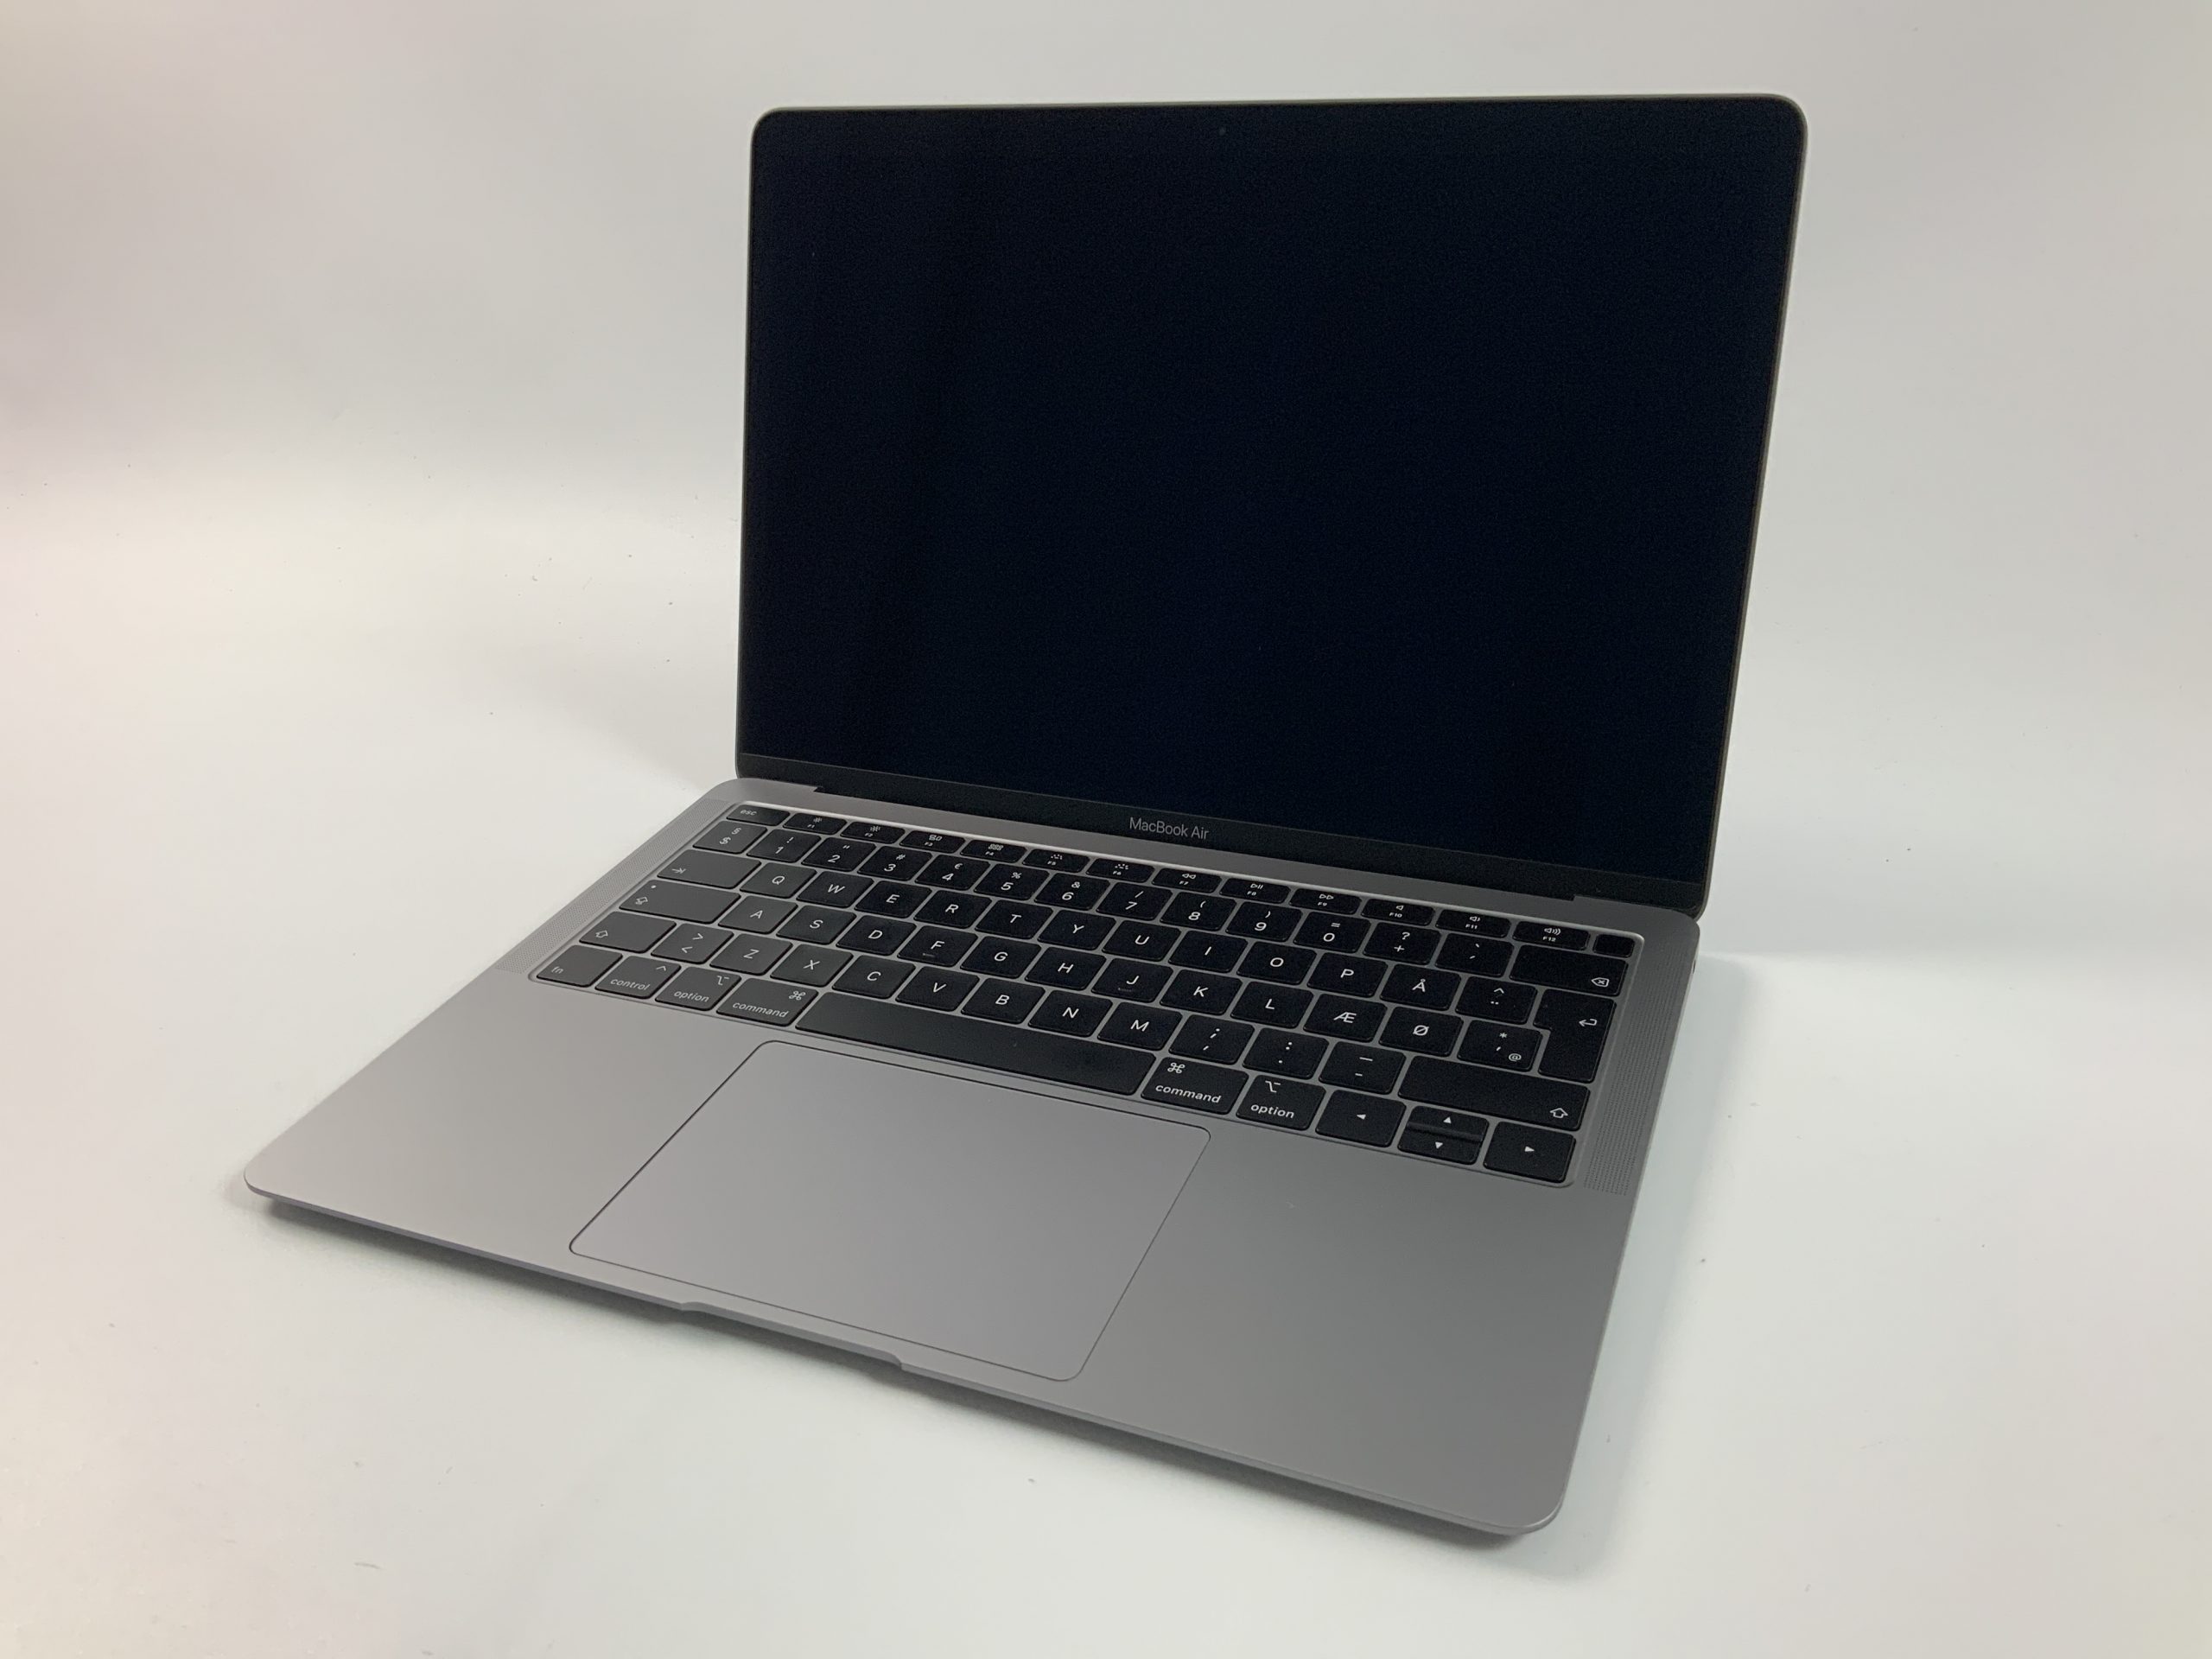 MacBook Air 13" Mid 2019 (Intel Core i5 1.6 GHz 8 GB RAM 128 GB SSD), Space Gray, Intel Core i5 1.6 GHz, 8 GB RAM, 128 GB SSD, Afbeelding 1